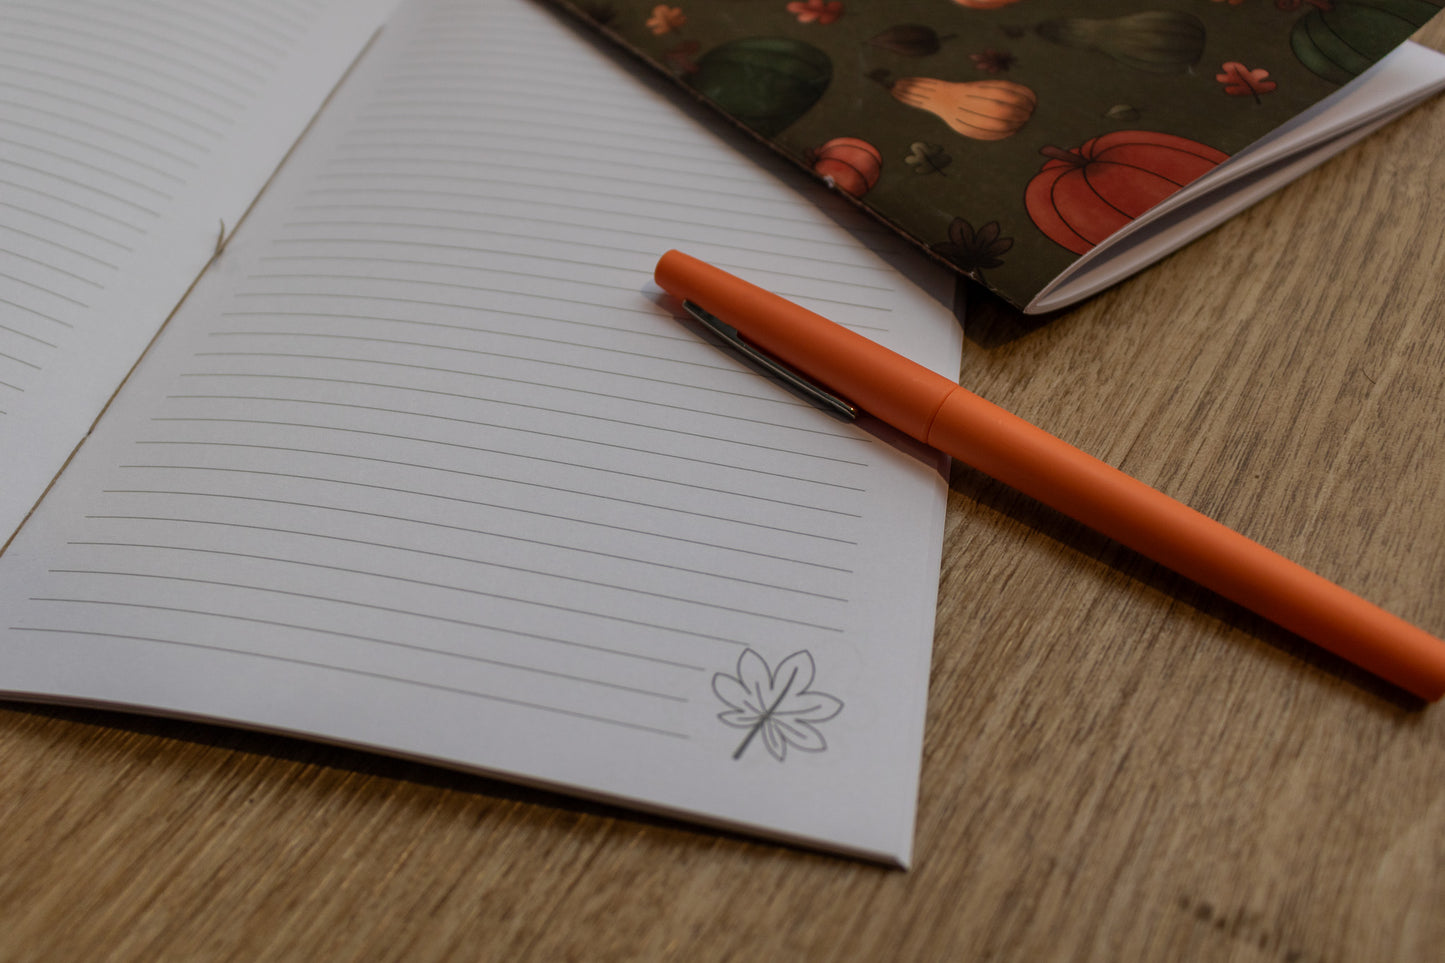 A5 Handmade Notebook with Pumpkin Design